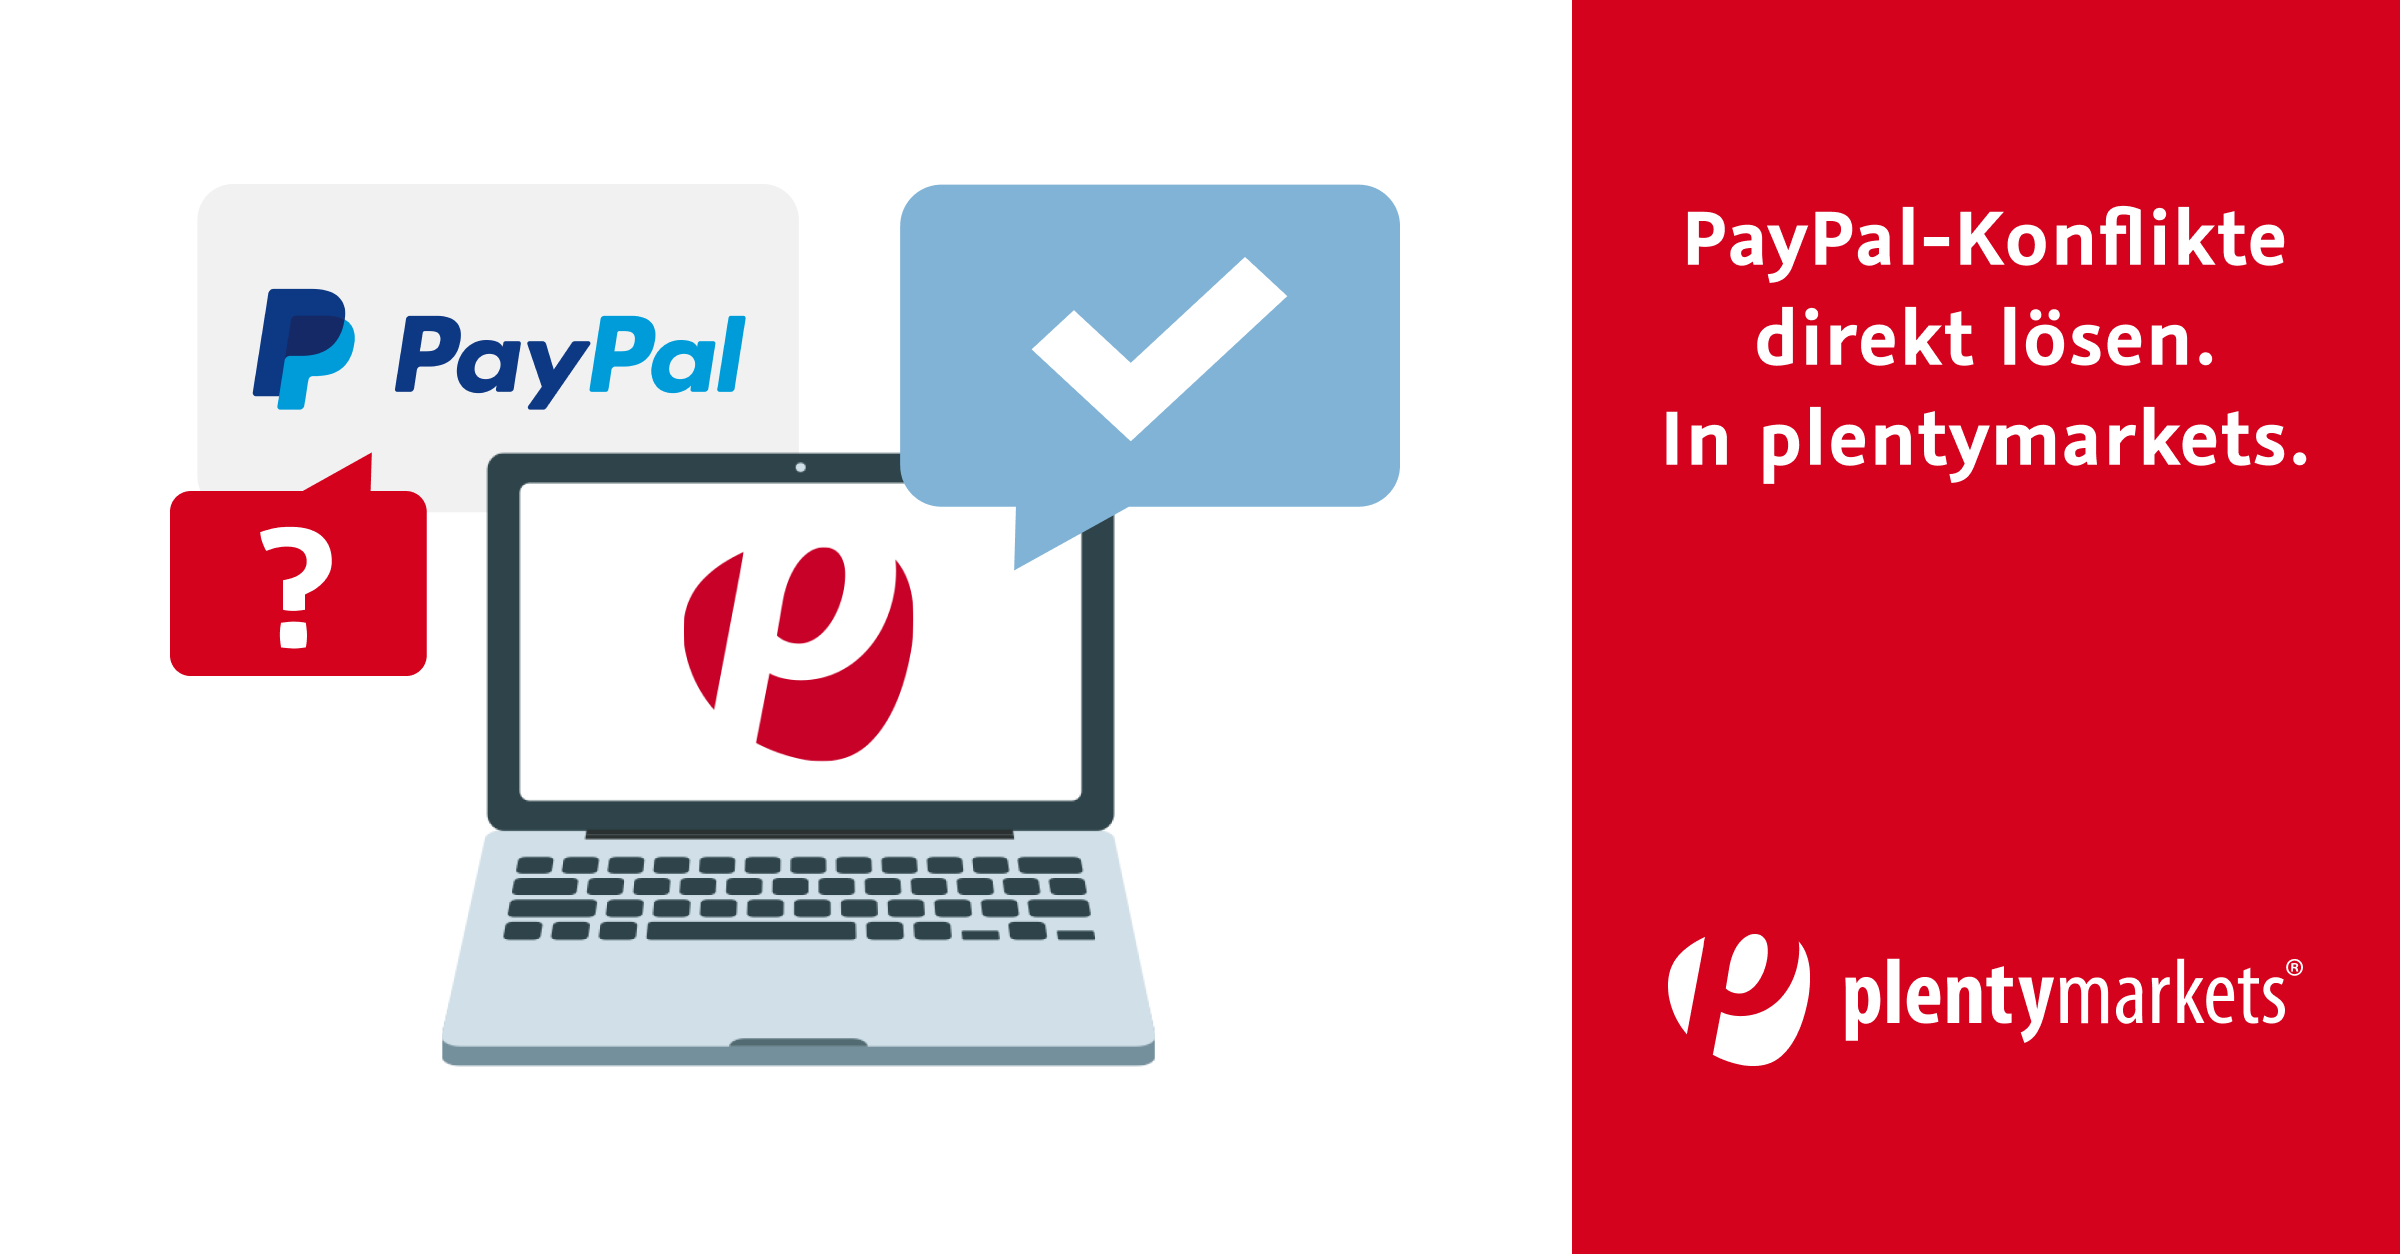 PayPal Konflikte Lösen in plentymarkets